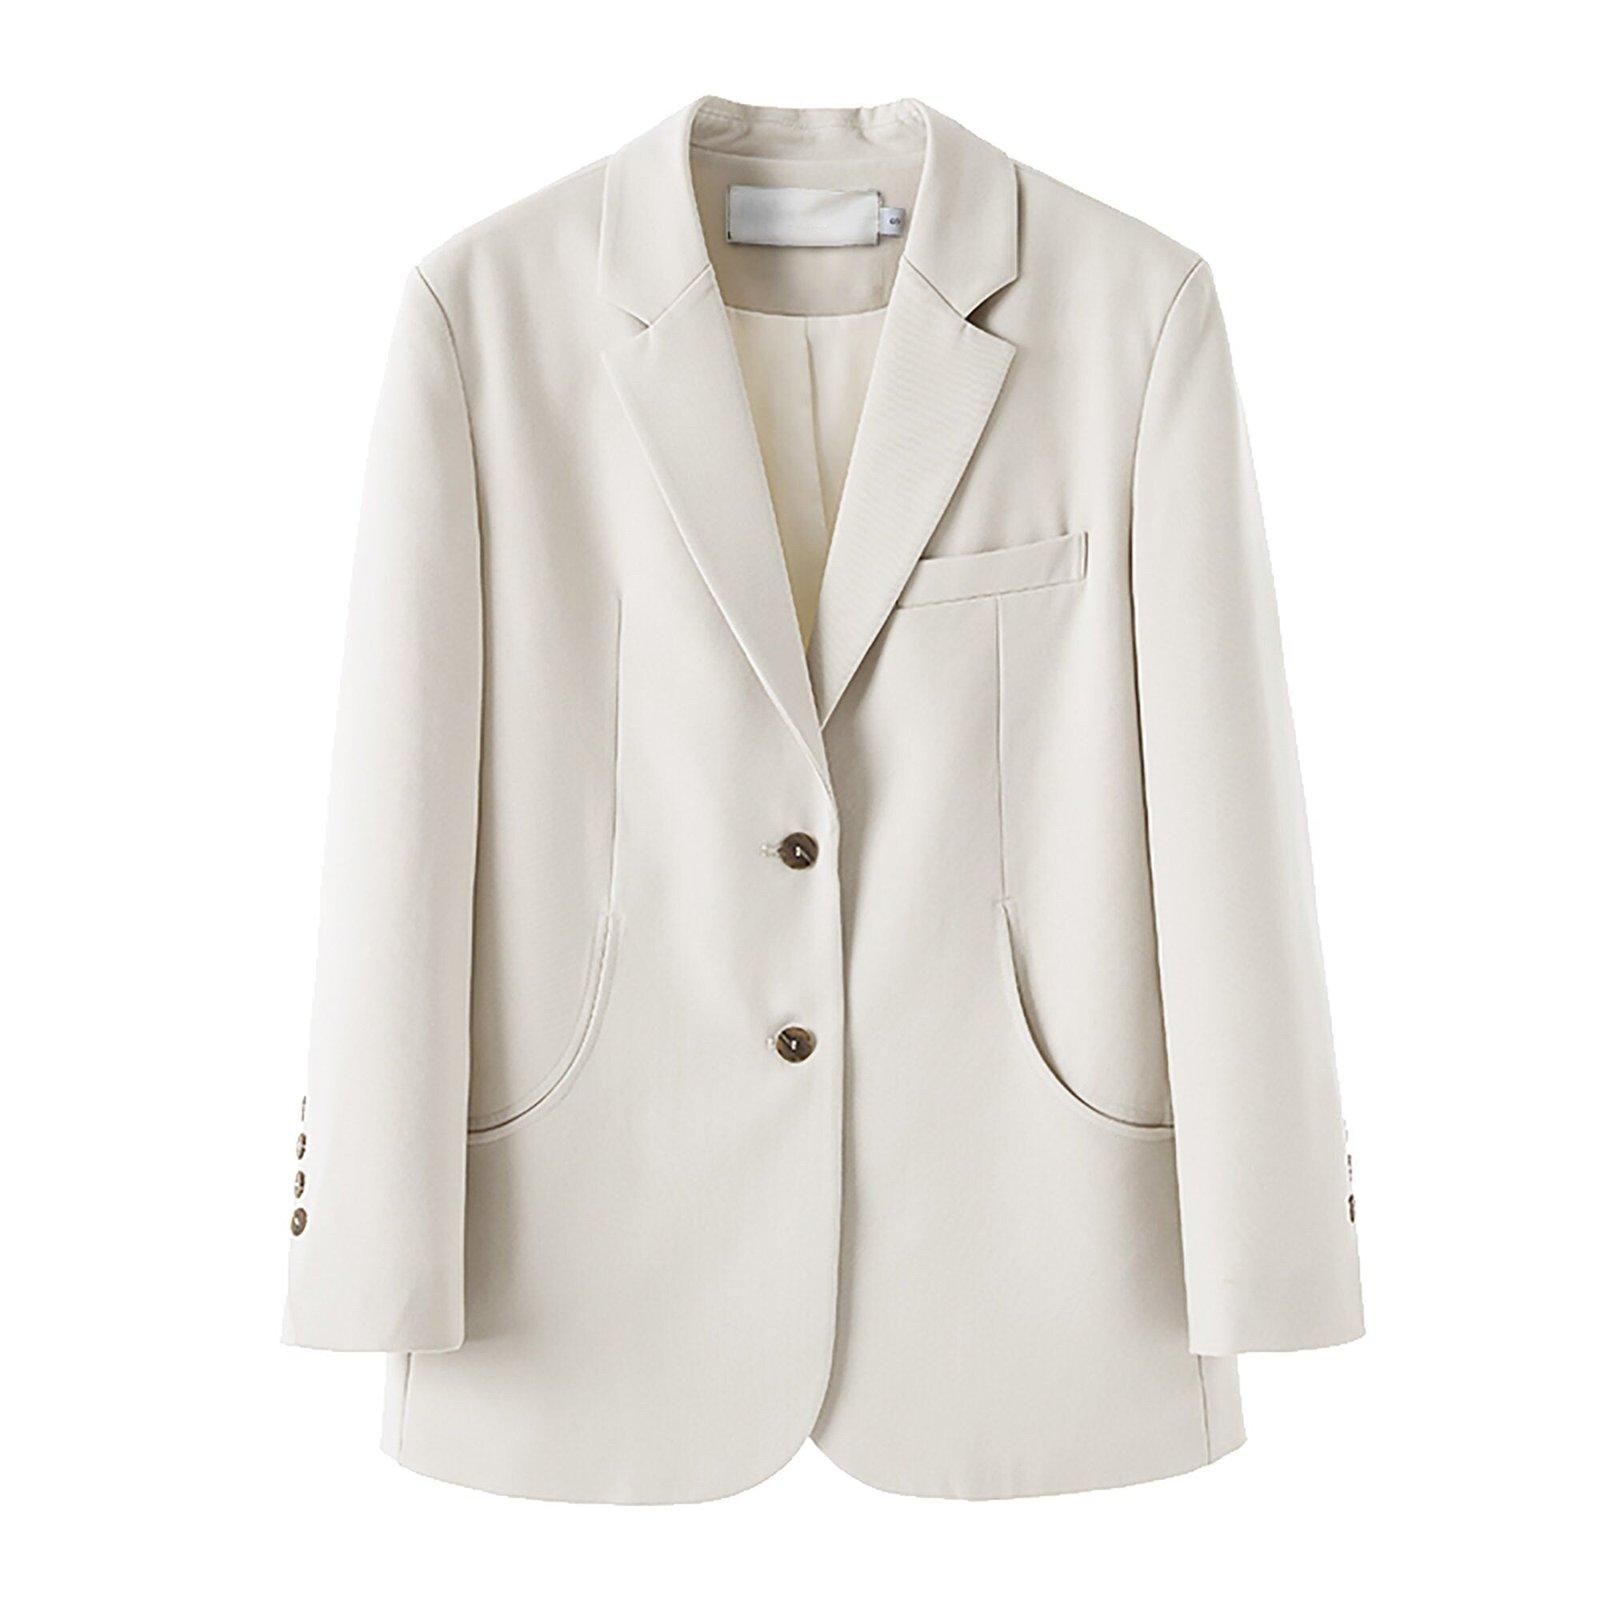 Women's Beige Oversize Blazer Shoulder pad Suit,Cotton blend Coat loose casual Suit Jacket,Office Lady Classic Style Blazer Coat,Fall Coat Vivian Seven